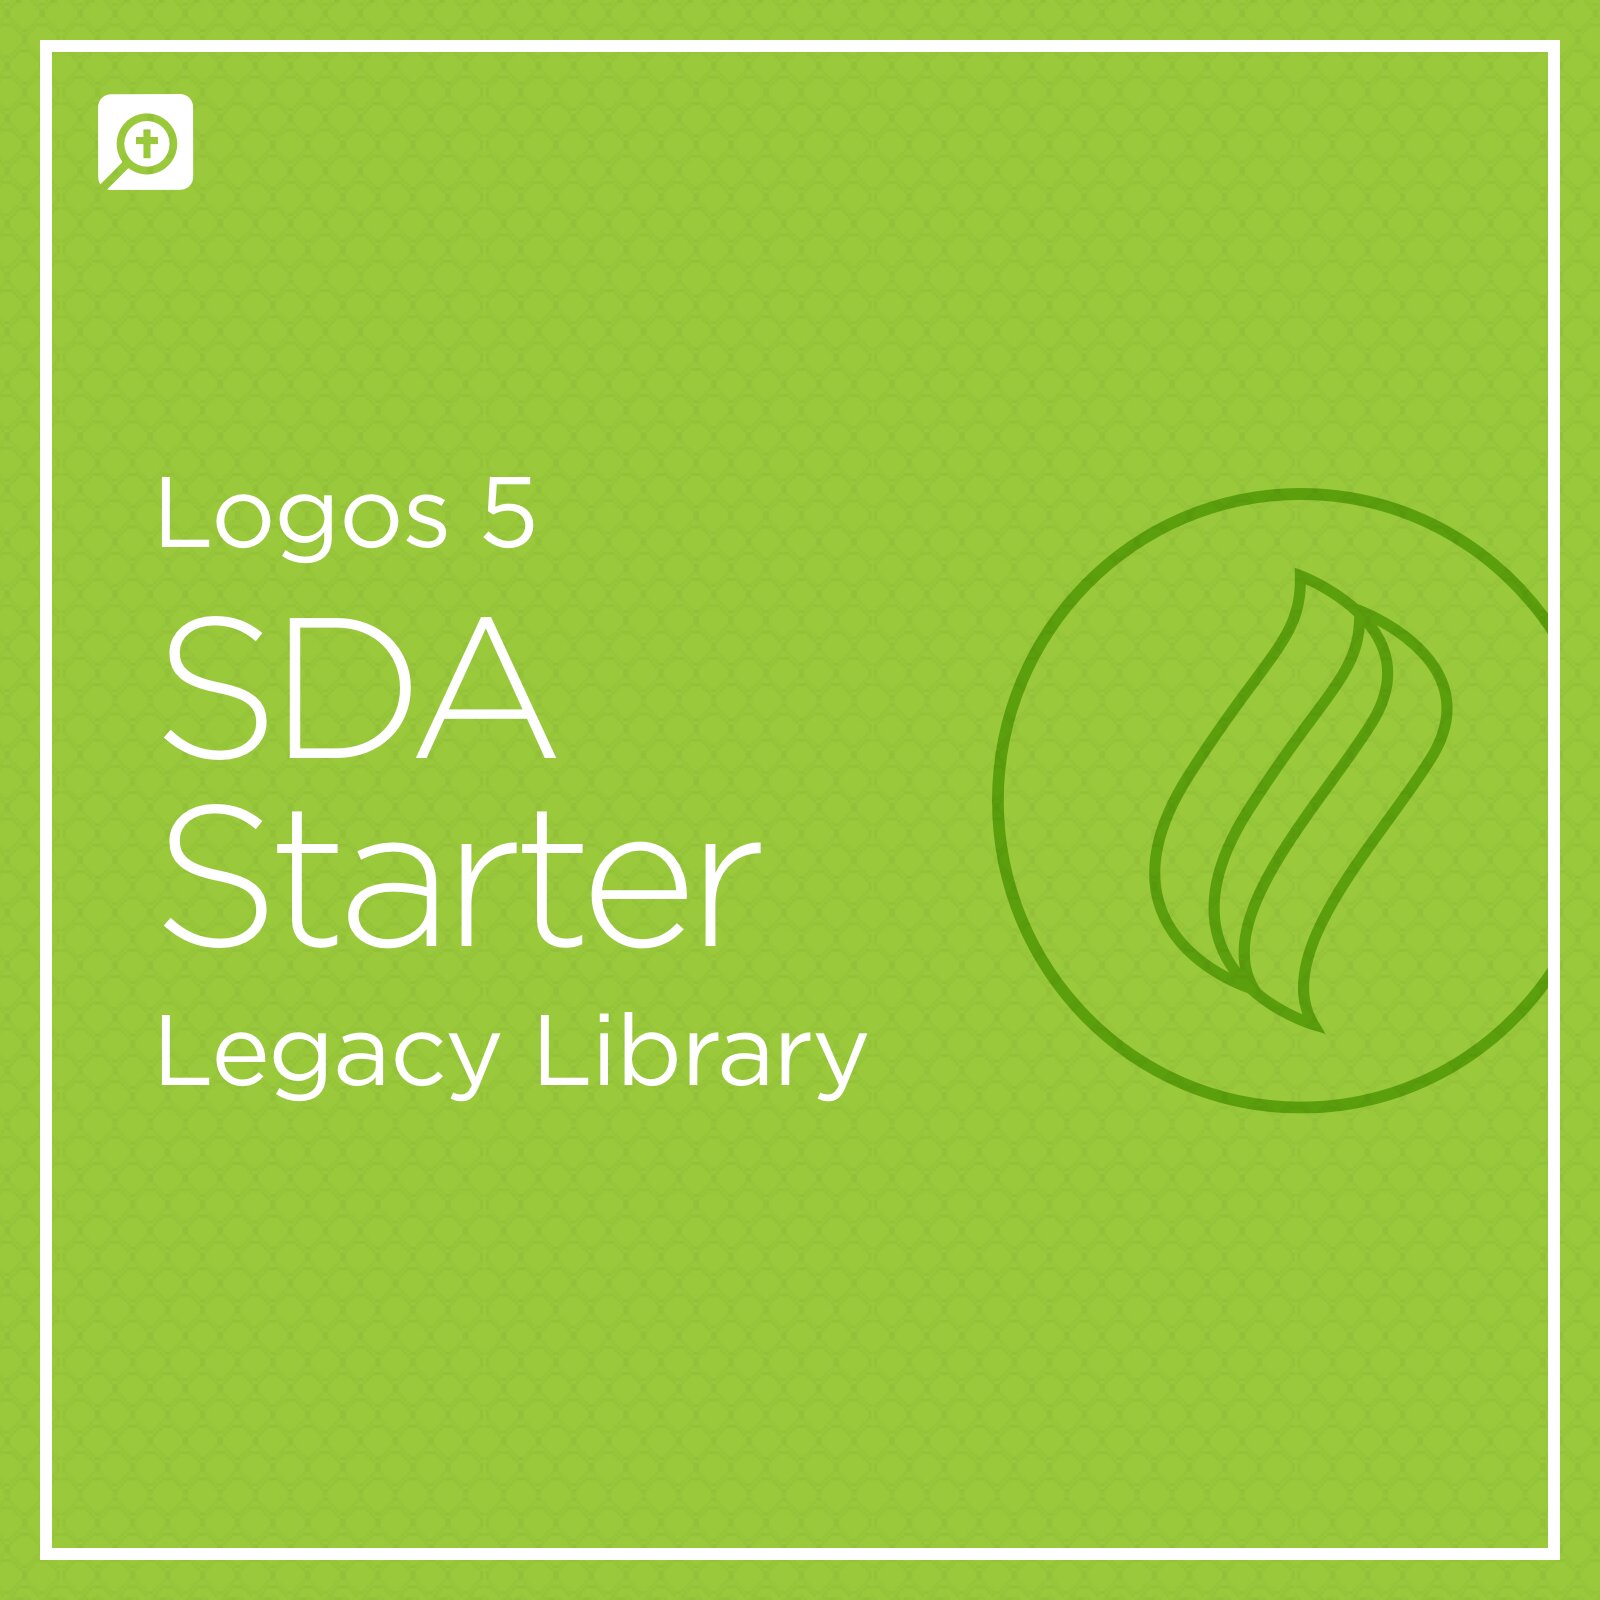 Logos 5 SDA Starter Legacy Library